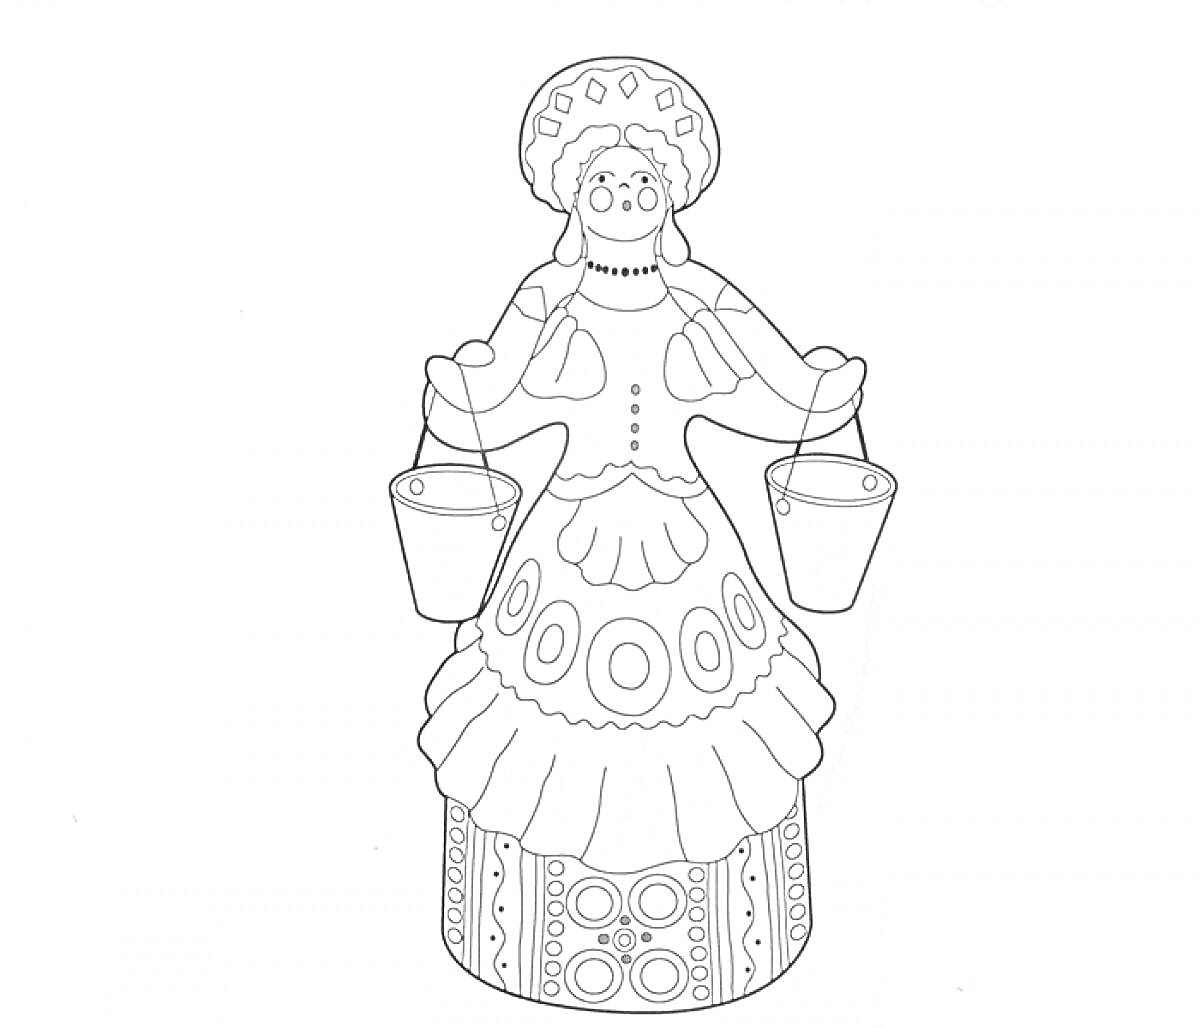 Женщина с коромыслом и двумя ведрами, в традиционном наряде с орнаментами и головным убором